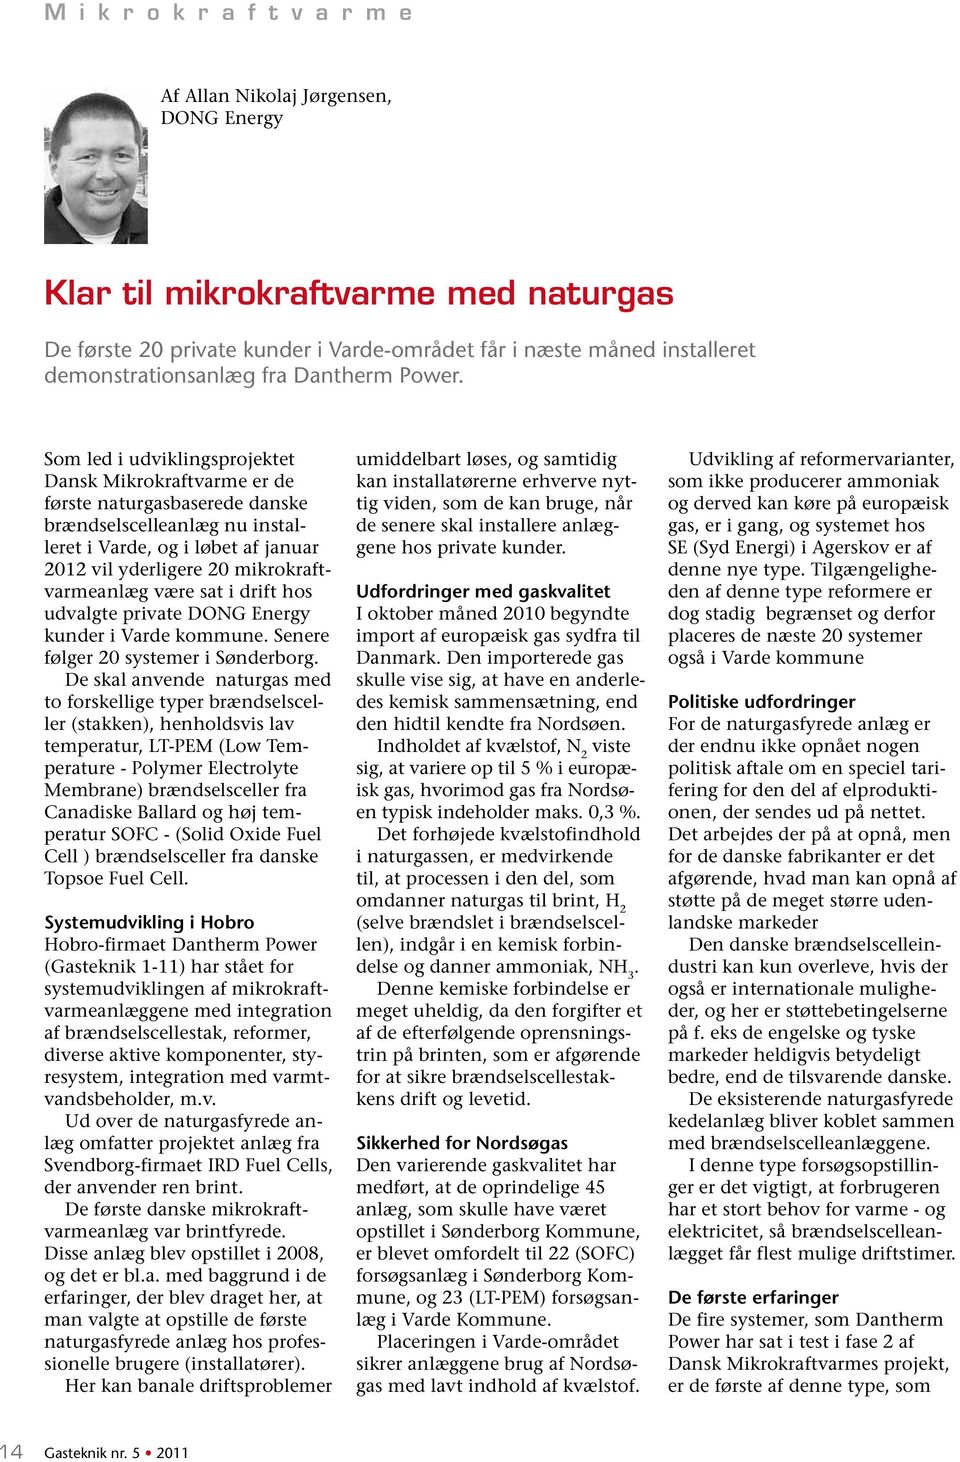 Som led i udviklingsprojektet Dansk Mikrokraftvarme er de første naturgasbaserede danske brændselscelleanlæg nu installeret i Varde, og i løbet af januar 2012 vil yderligere 20 mikrokraftvarmeanlæg